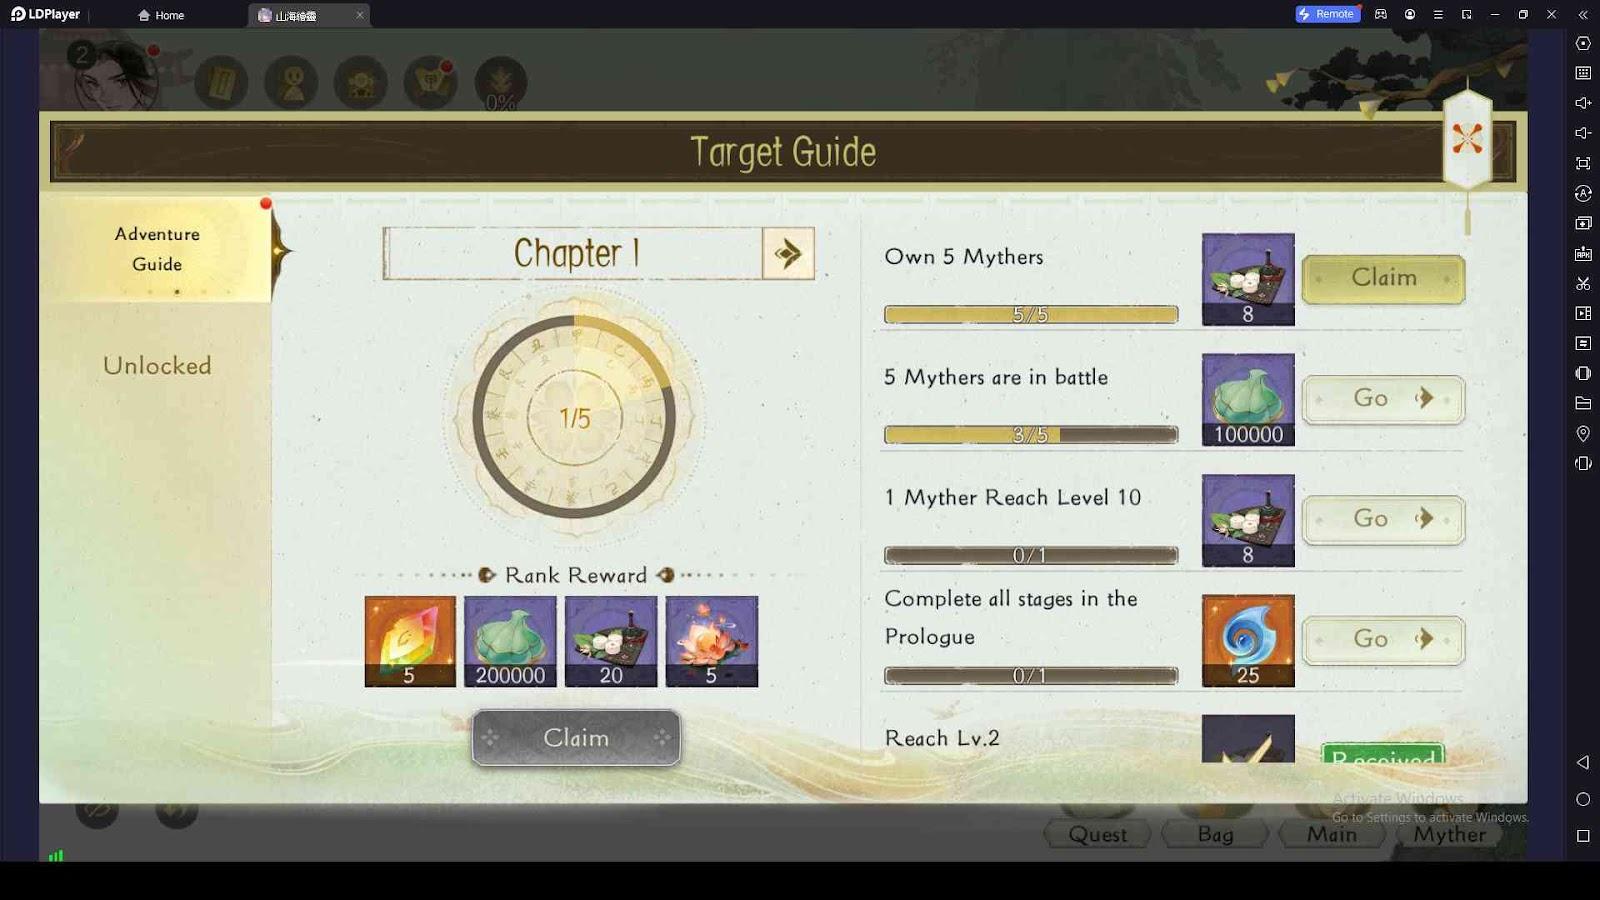 Target Guide Tasks for Lots of Rewards